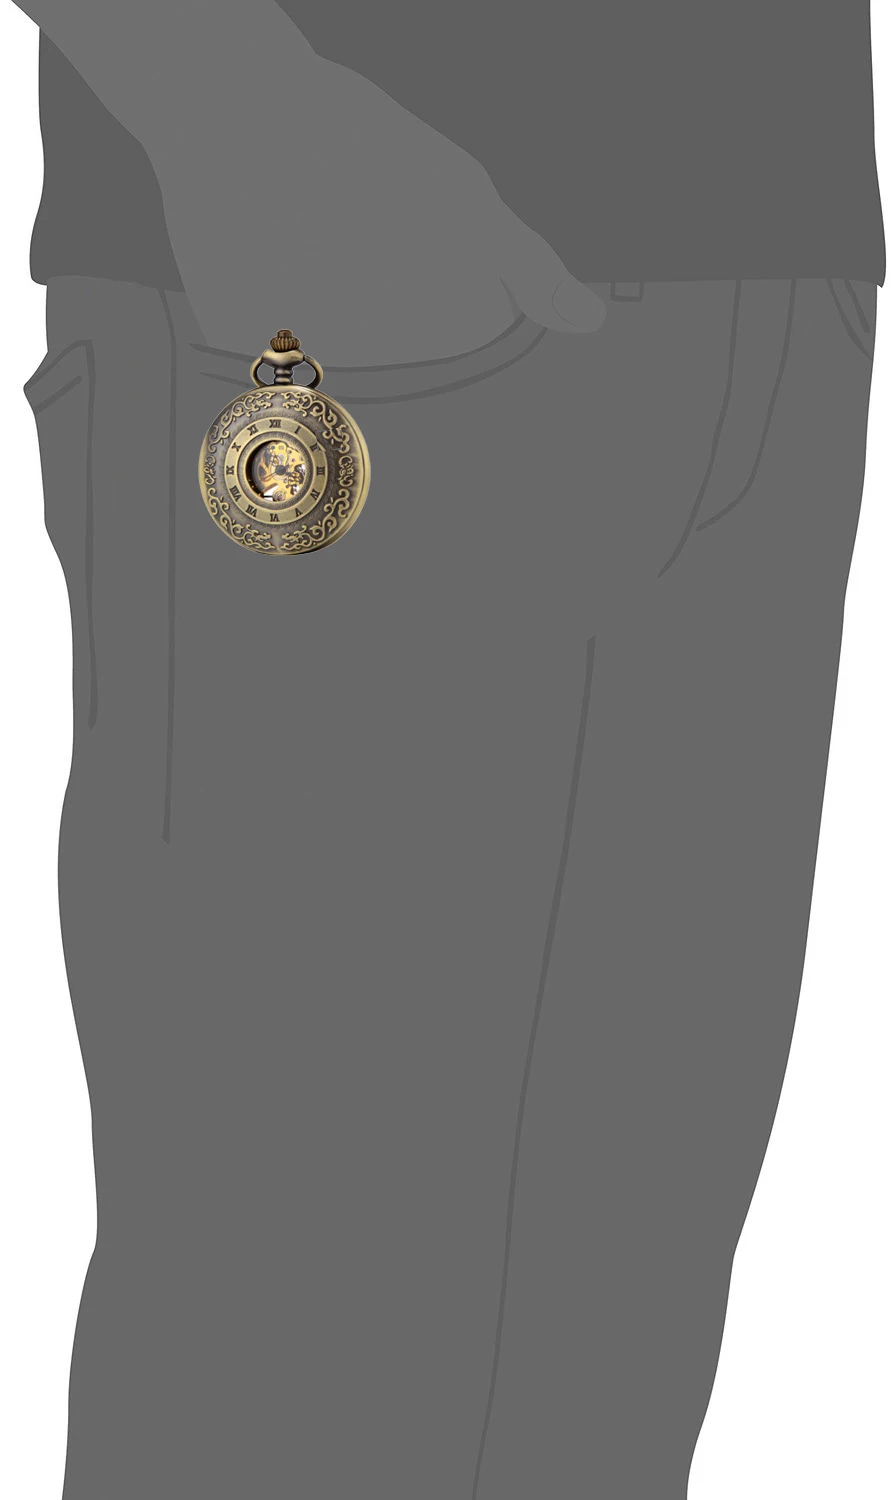 SEWOR Новый Винтаж бронзовый цветок мужские карманные часы световой Дело Механическая рука Ветер C131